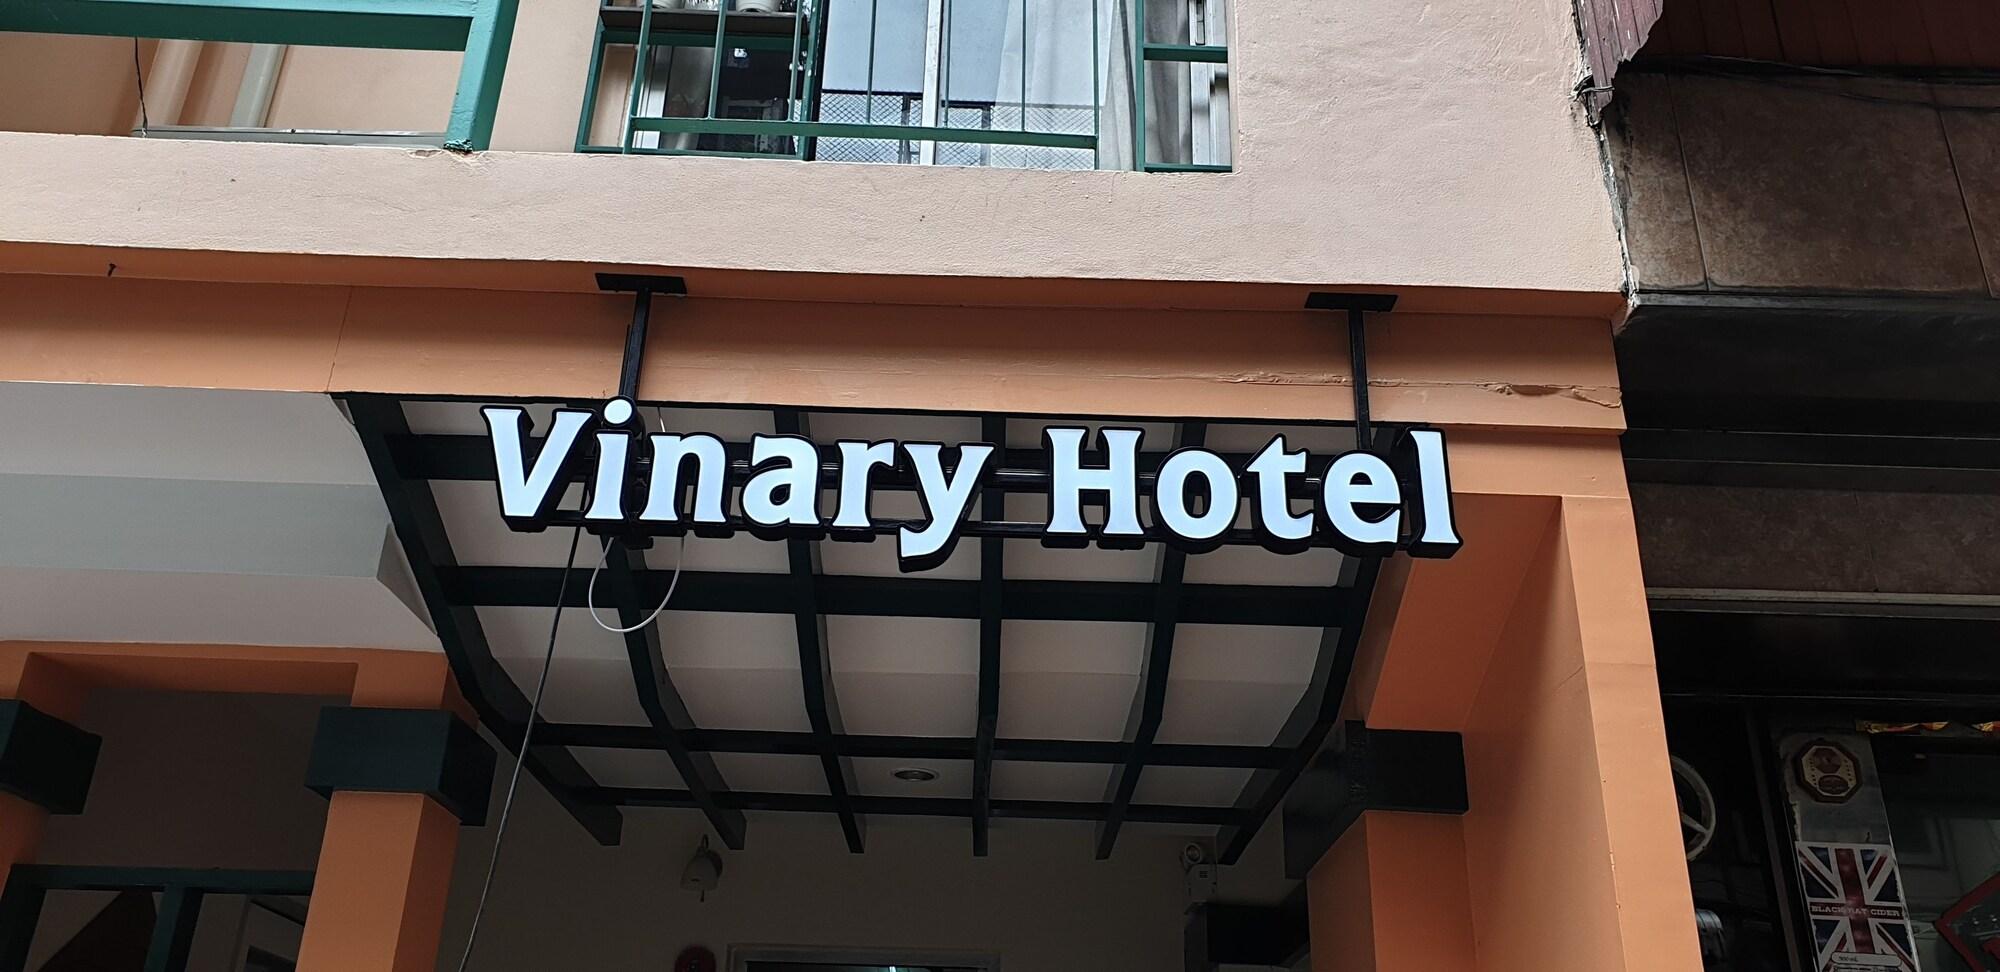 Variados (as) Vinary Hotel